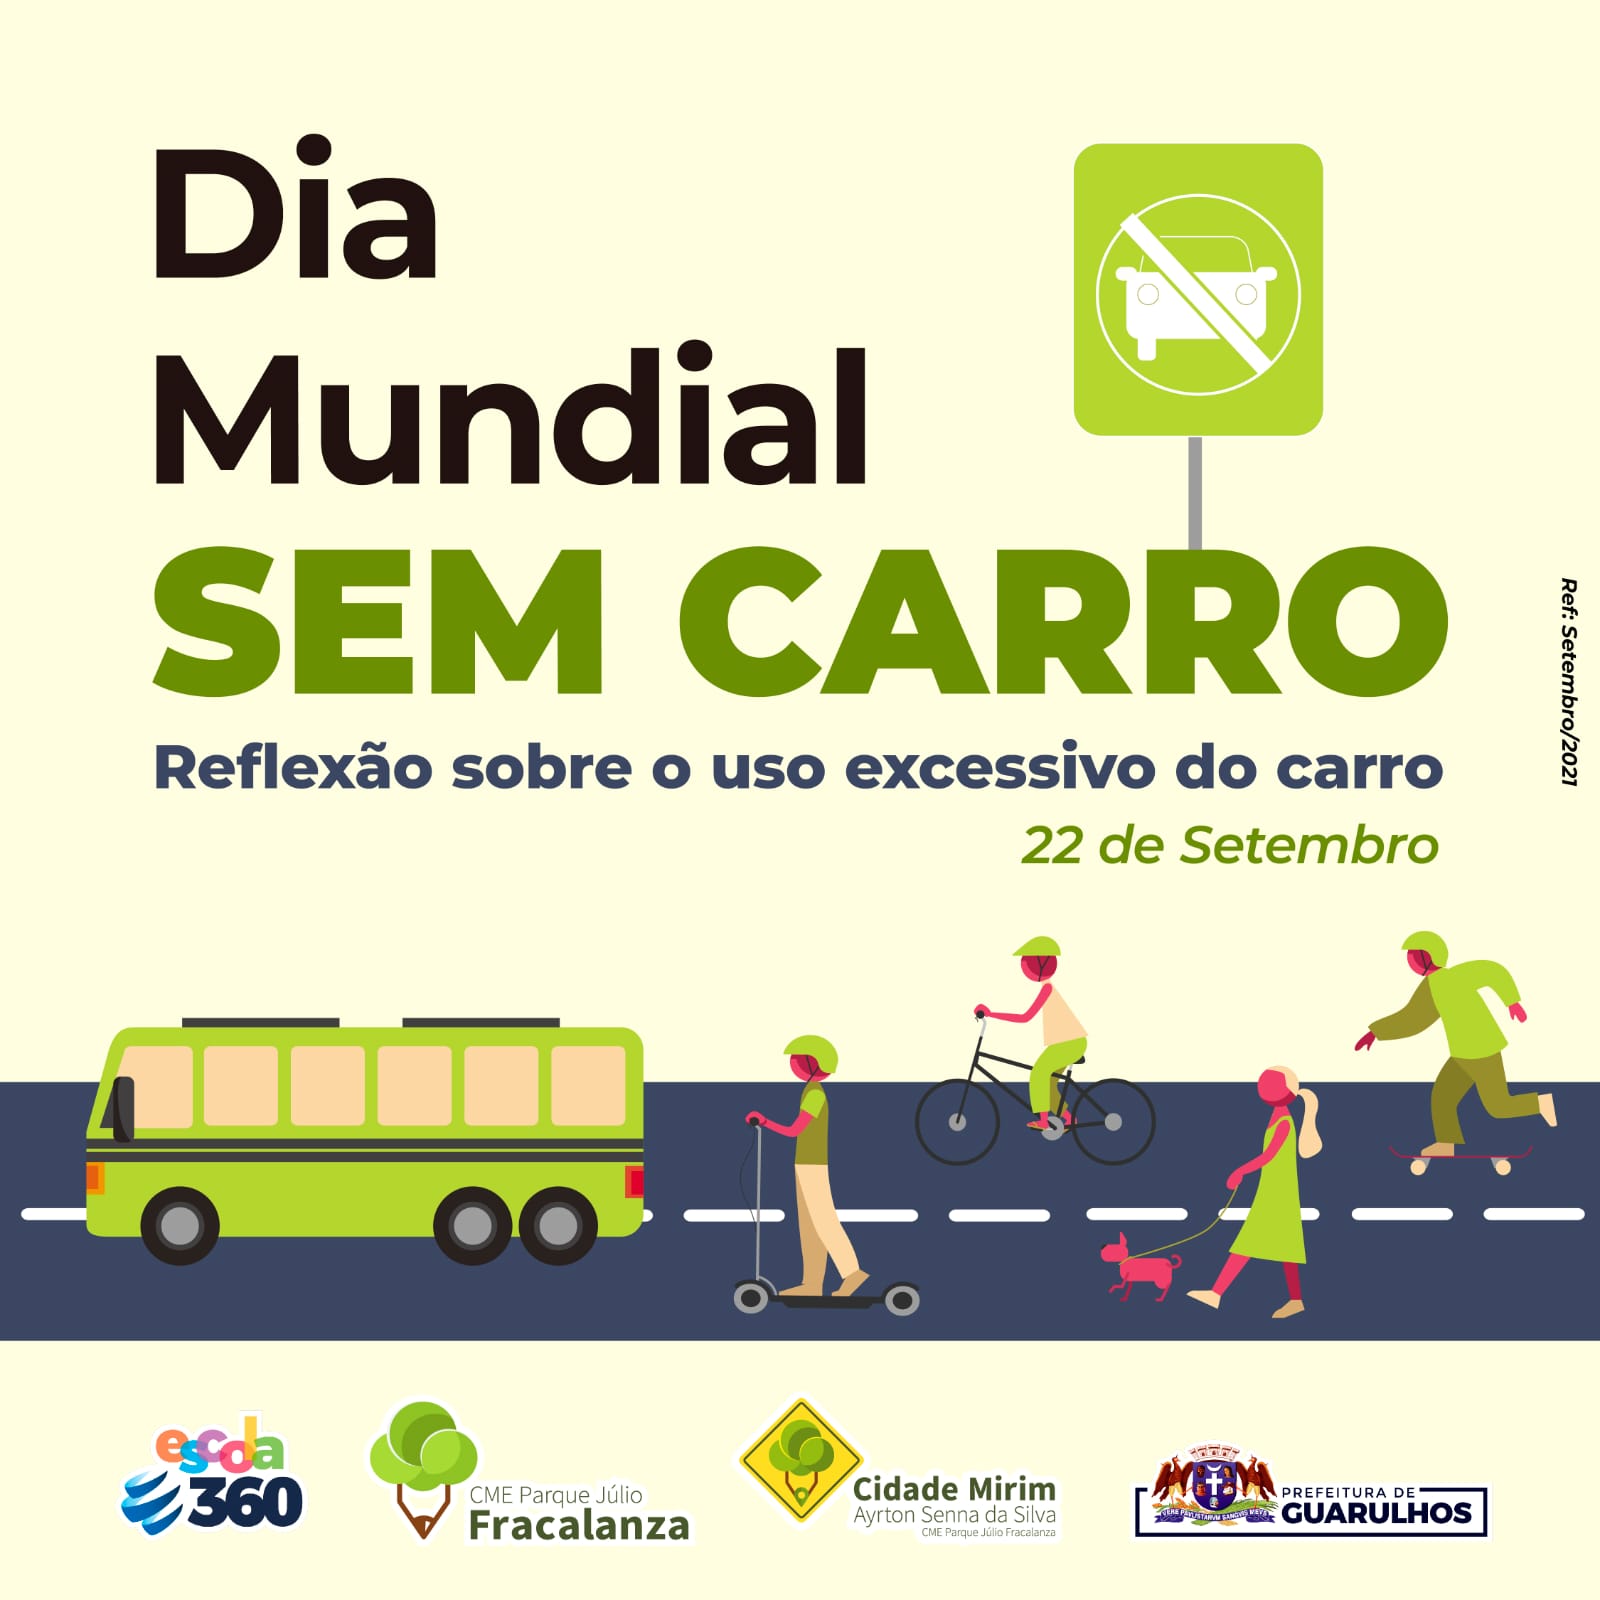 Dia Mundial Sem Carro - 22 de setembro - InfoEscola